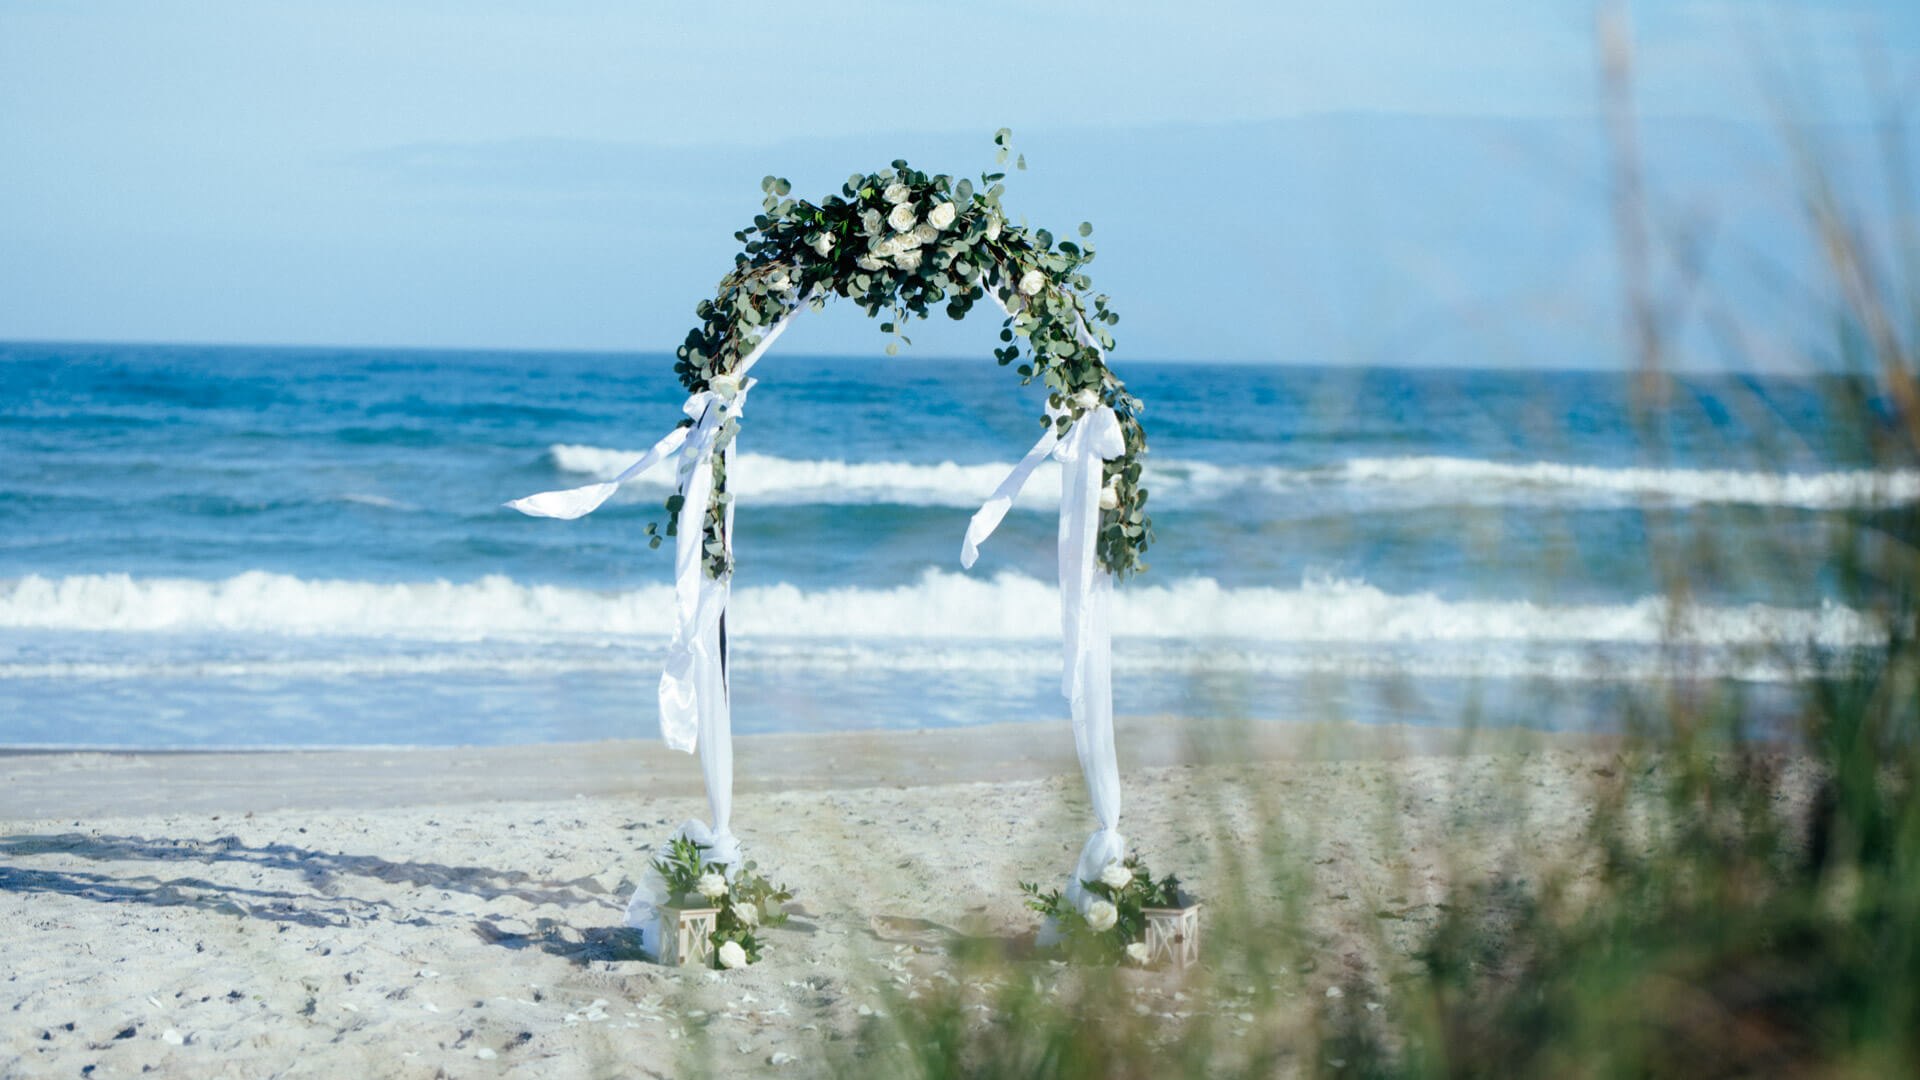 Hochzeit für zwei in Florida, Foto vom Hochzeitsbogen mit weissen Rosen und Gruen